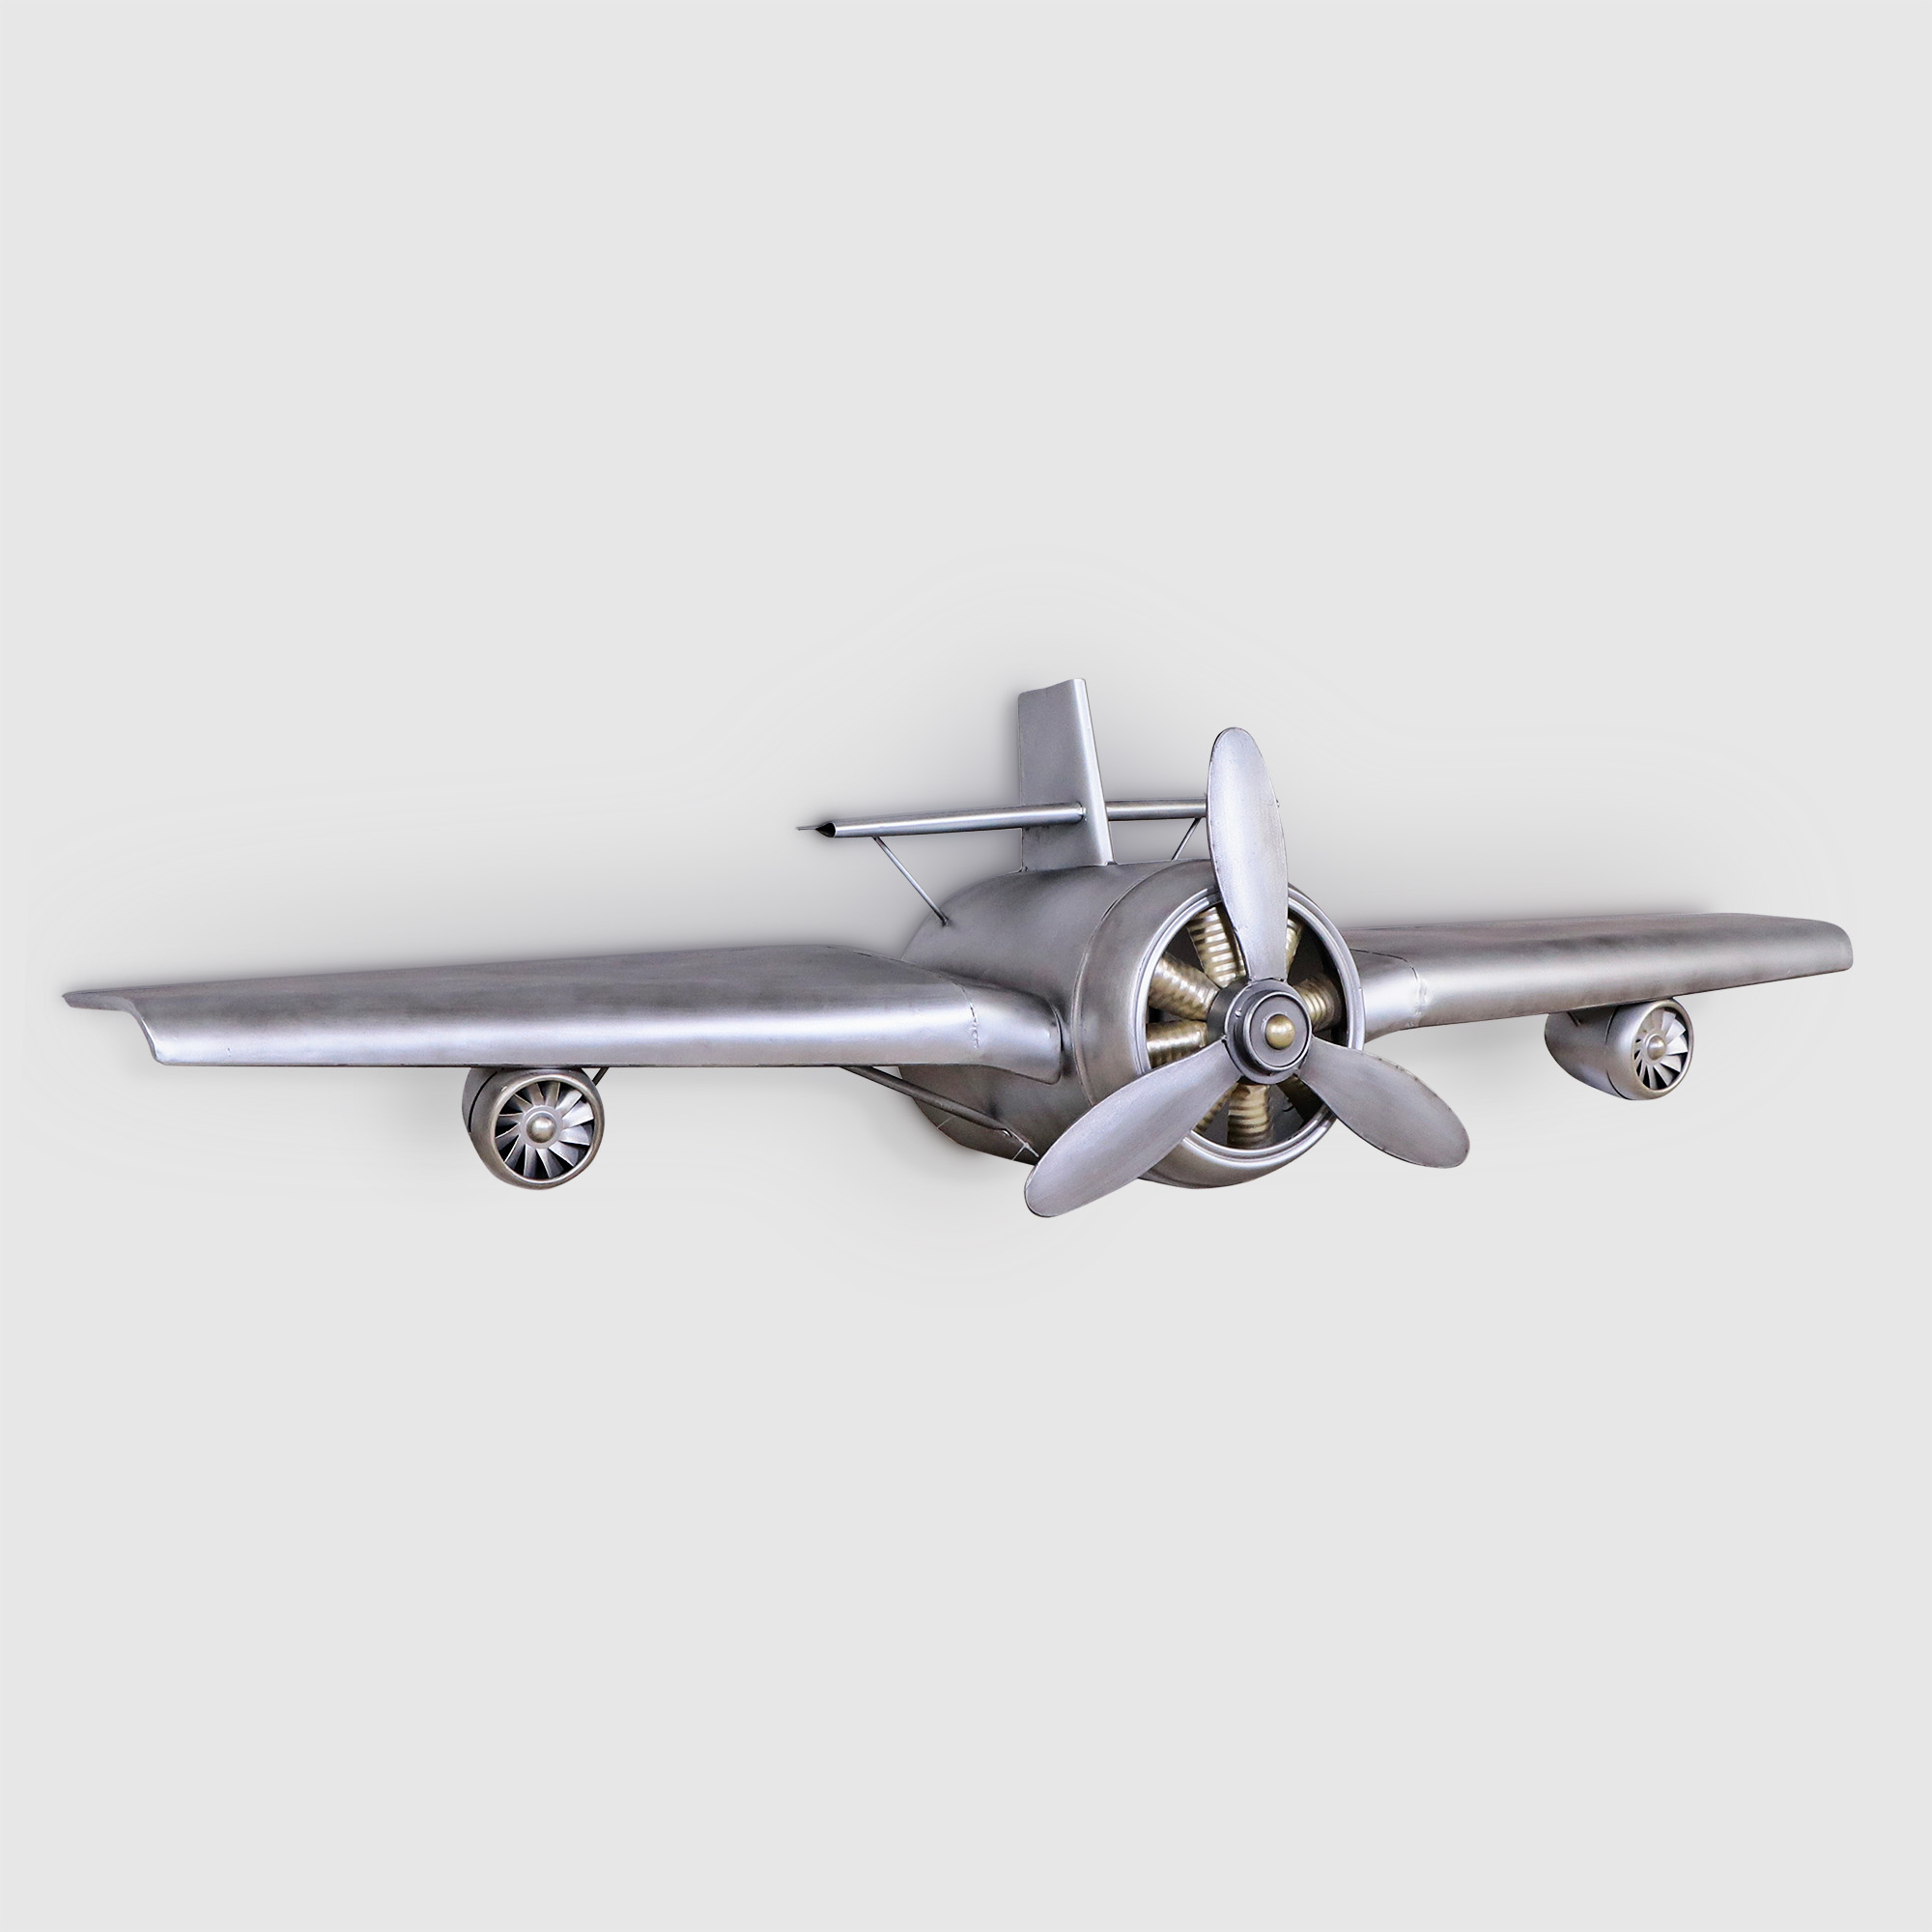 Самолет декоративный Bolai Arts серебряный, 157x40x36 см сортер совтехстром самолет